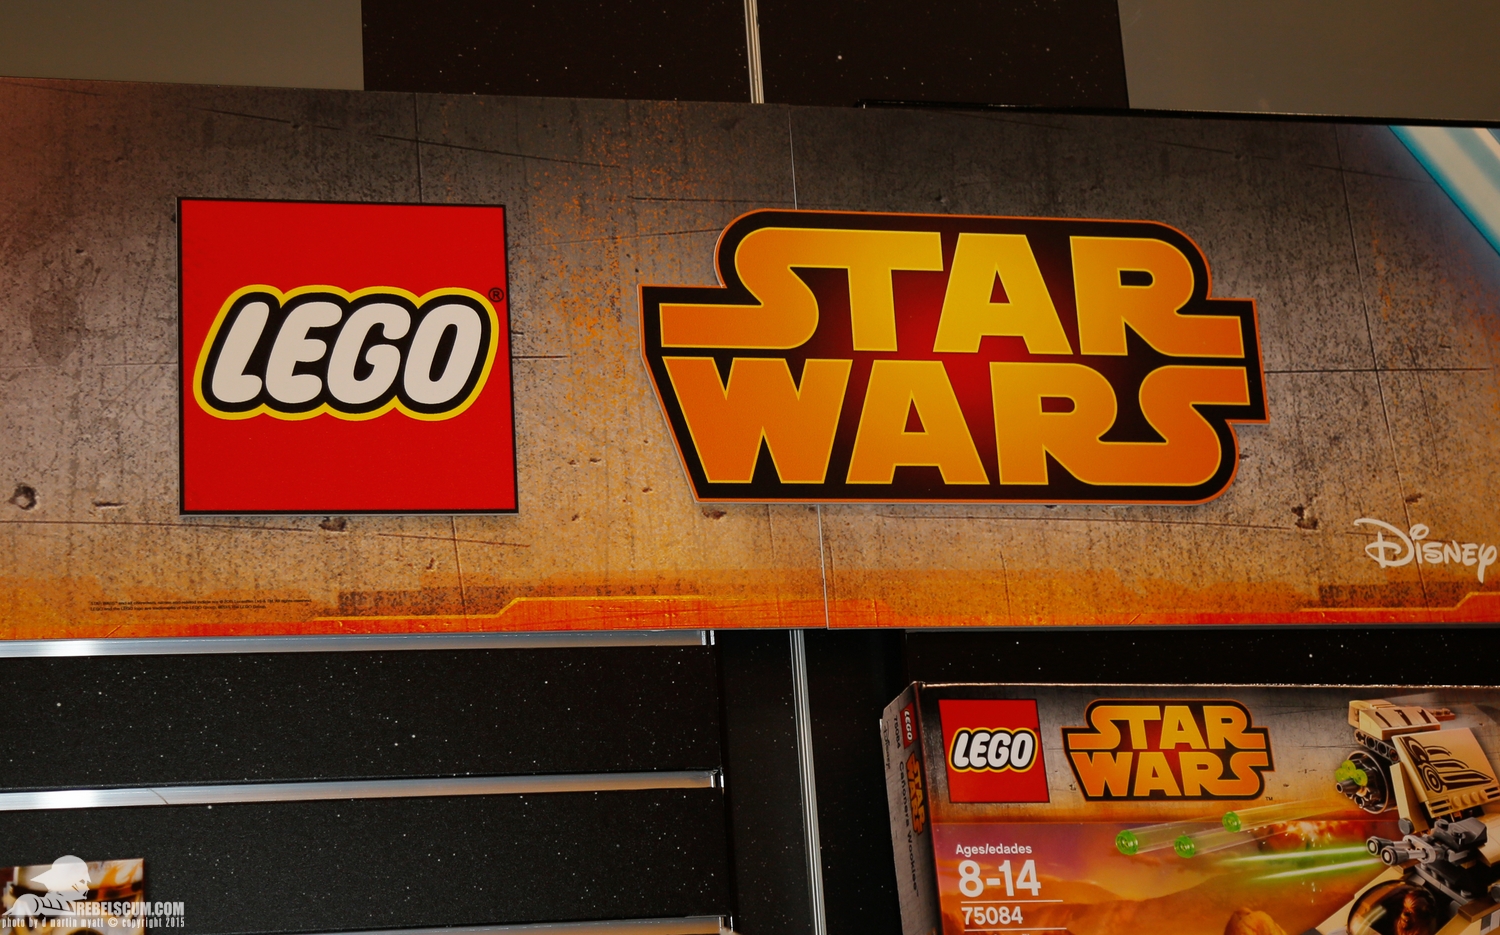 2015-International-Toy-Fair-Star-Wars-Lego-001.jpg